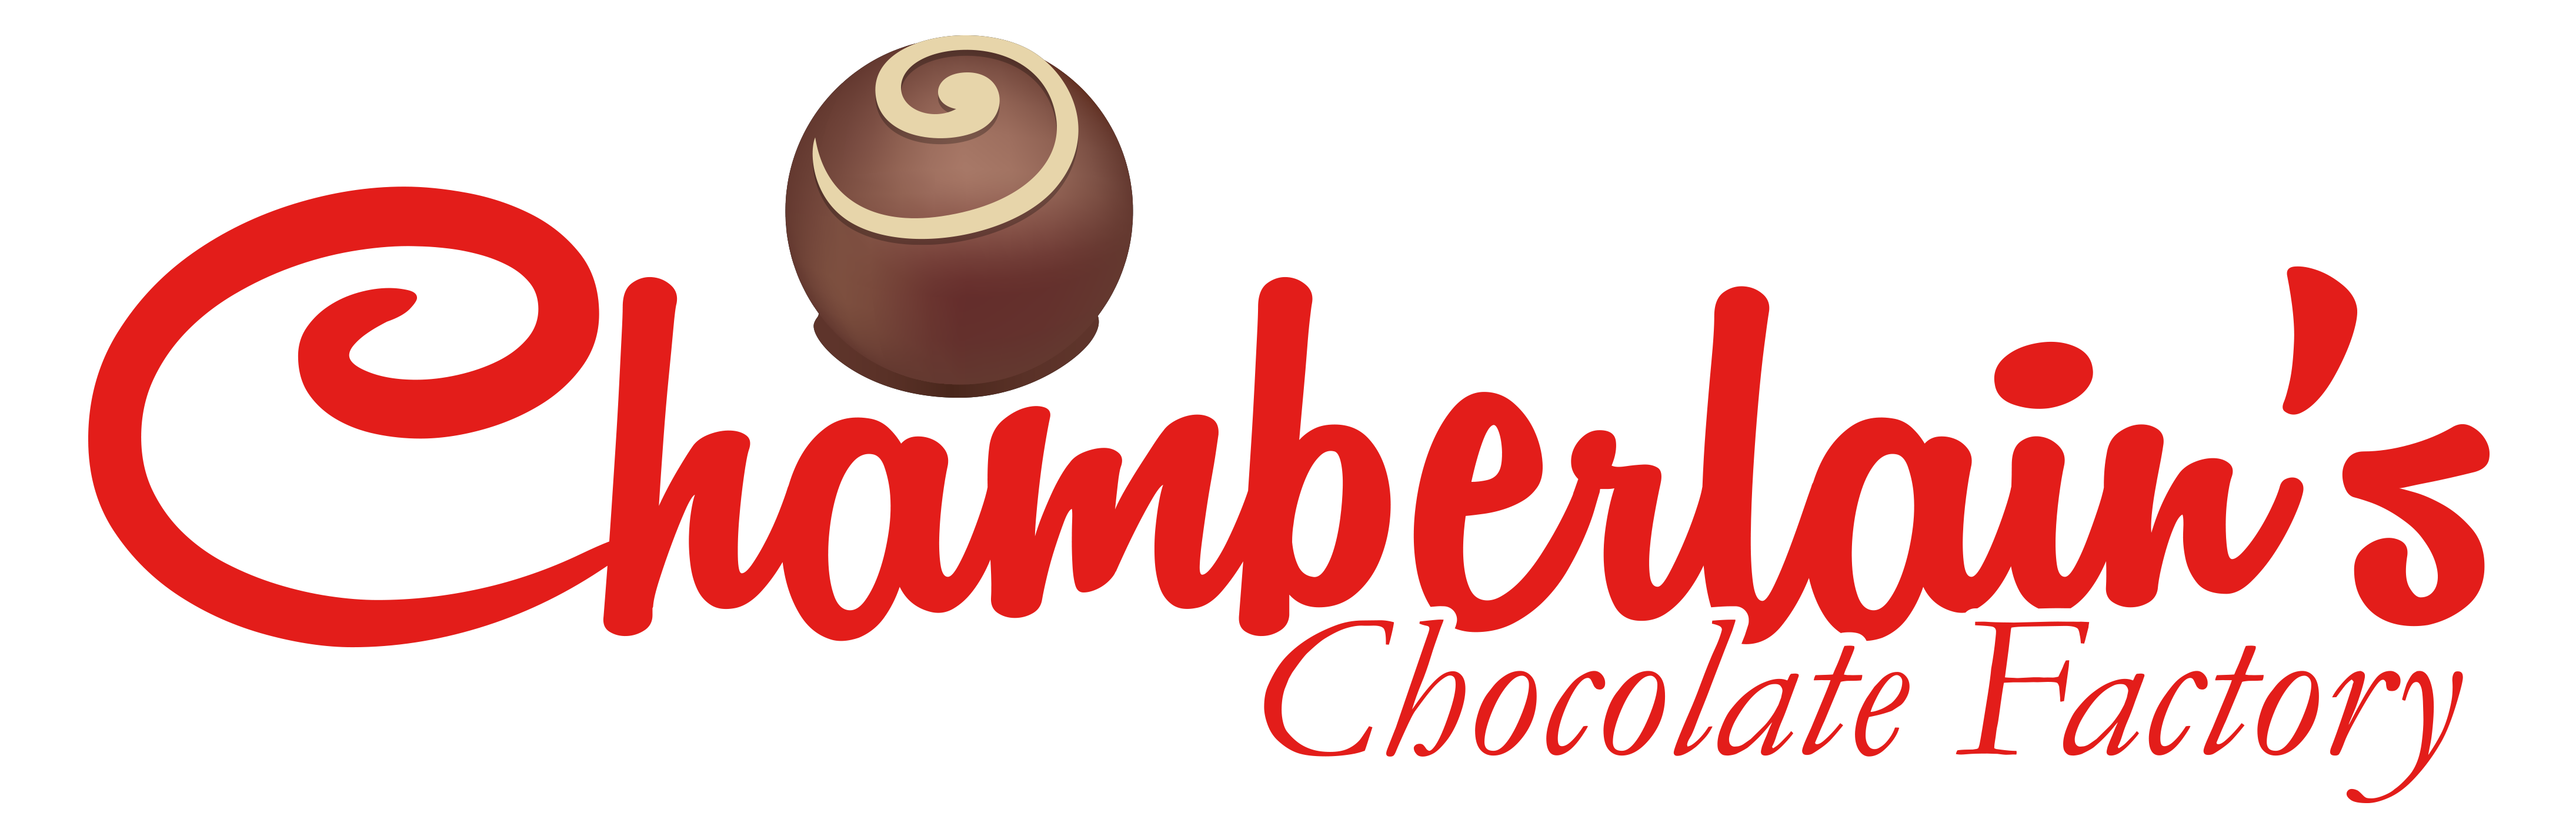 Chamberlains Chocolate